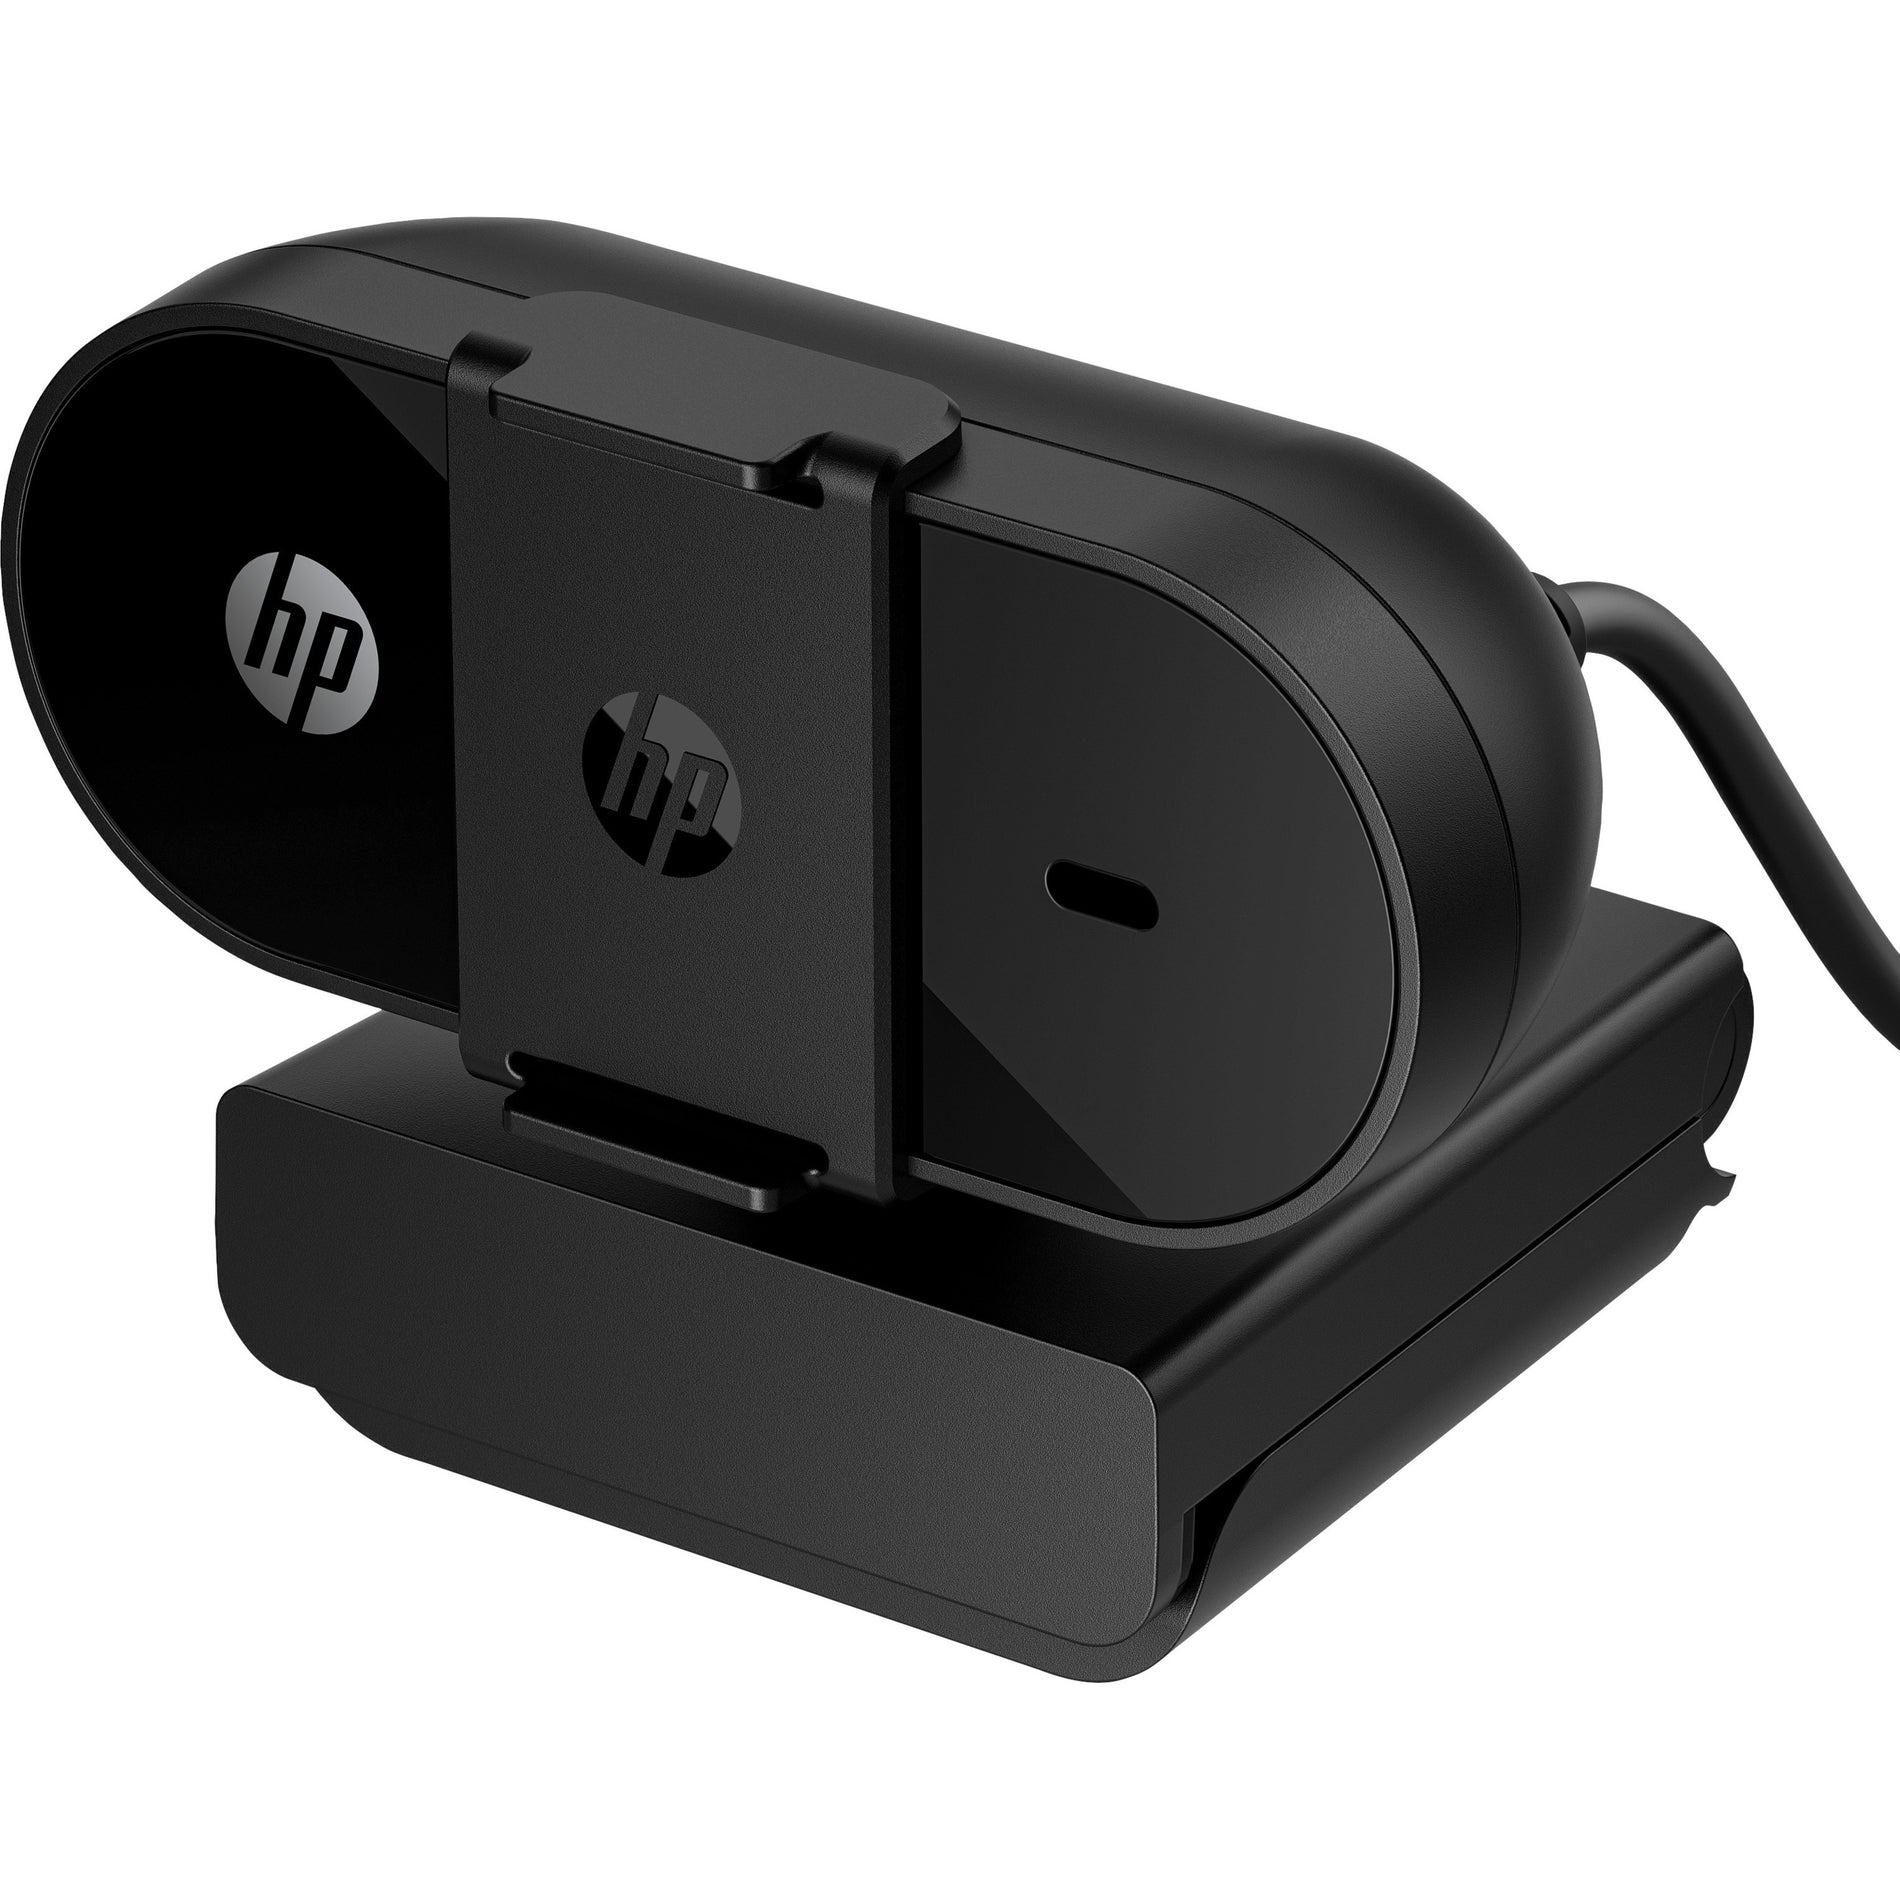 HP 53X26AA#ABL 320 FHD ウェブカメラ、30 fps、ブラック、USB Type A HPを翻訳すると「ヒューレット・パッカード」になります。